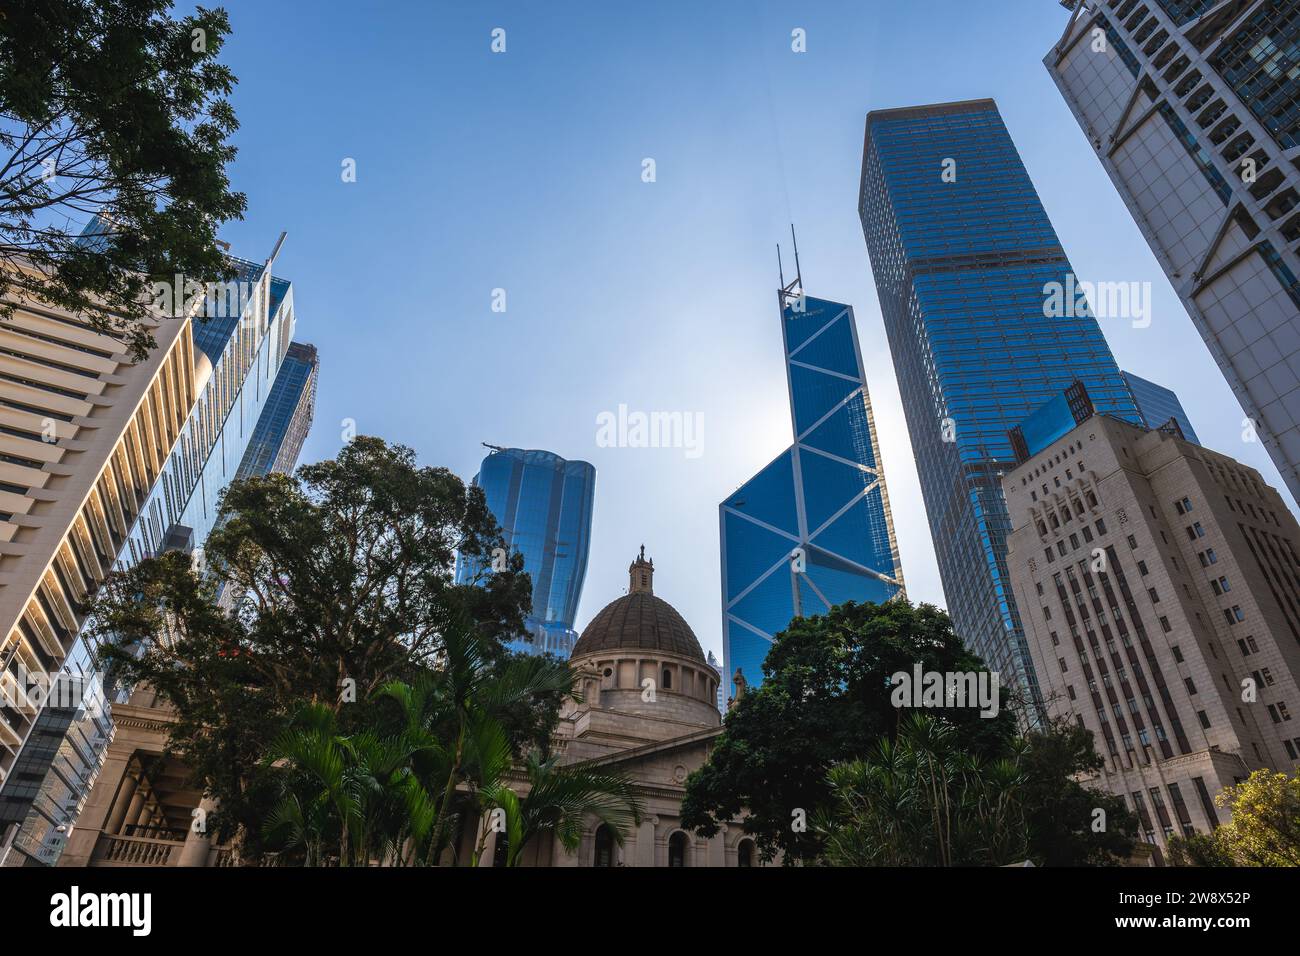 Landschaft des Statue Square, einer öffentlichen Fußgängerzone im Zentrum von Hongkong, China. Stockfoto